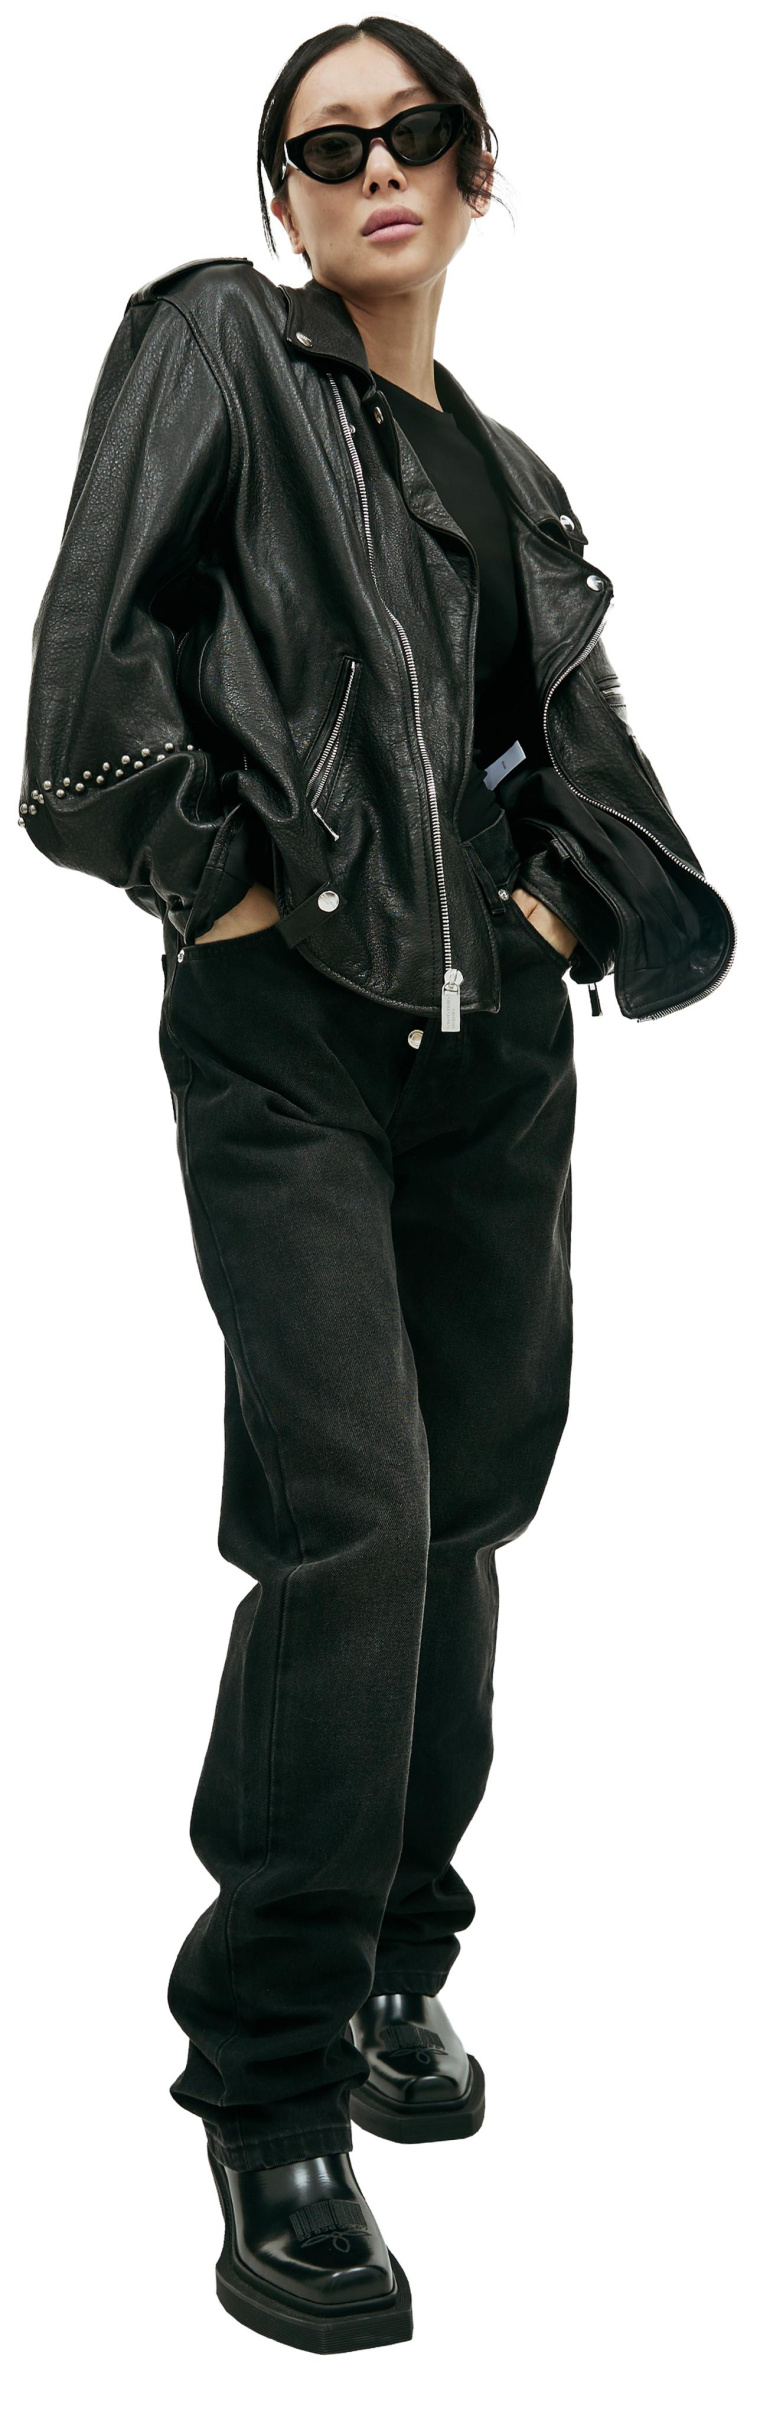 Enfants Riches Deprimes Black leather jacket